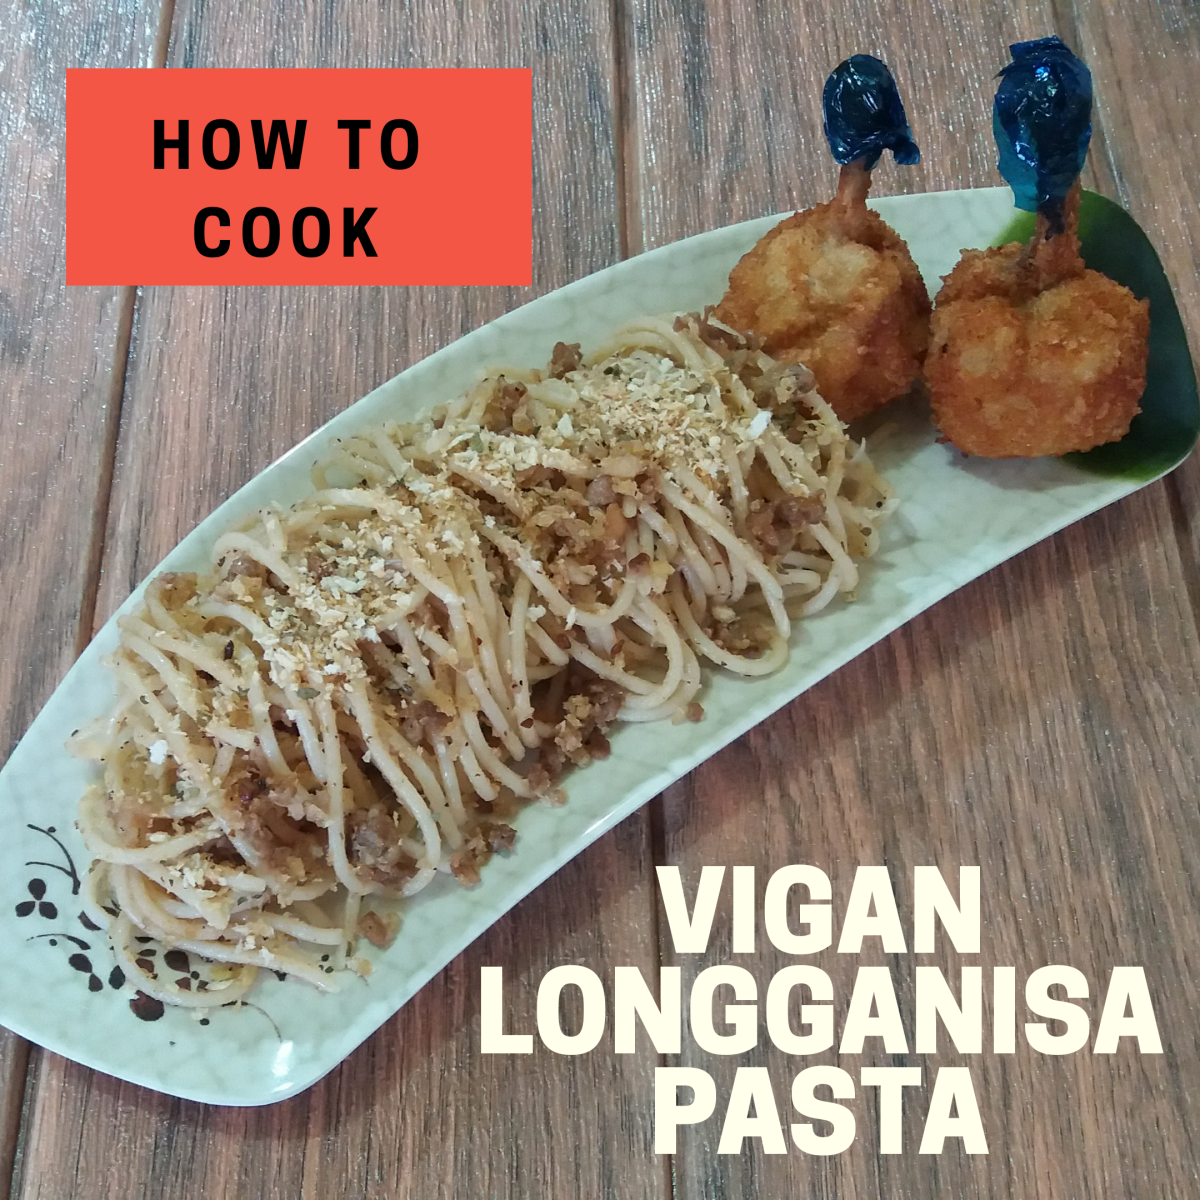 Learn how to prepare Vigan longganisa pasta using the recipe below!